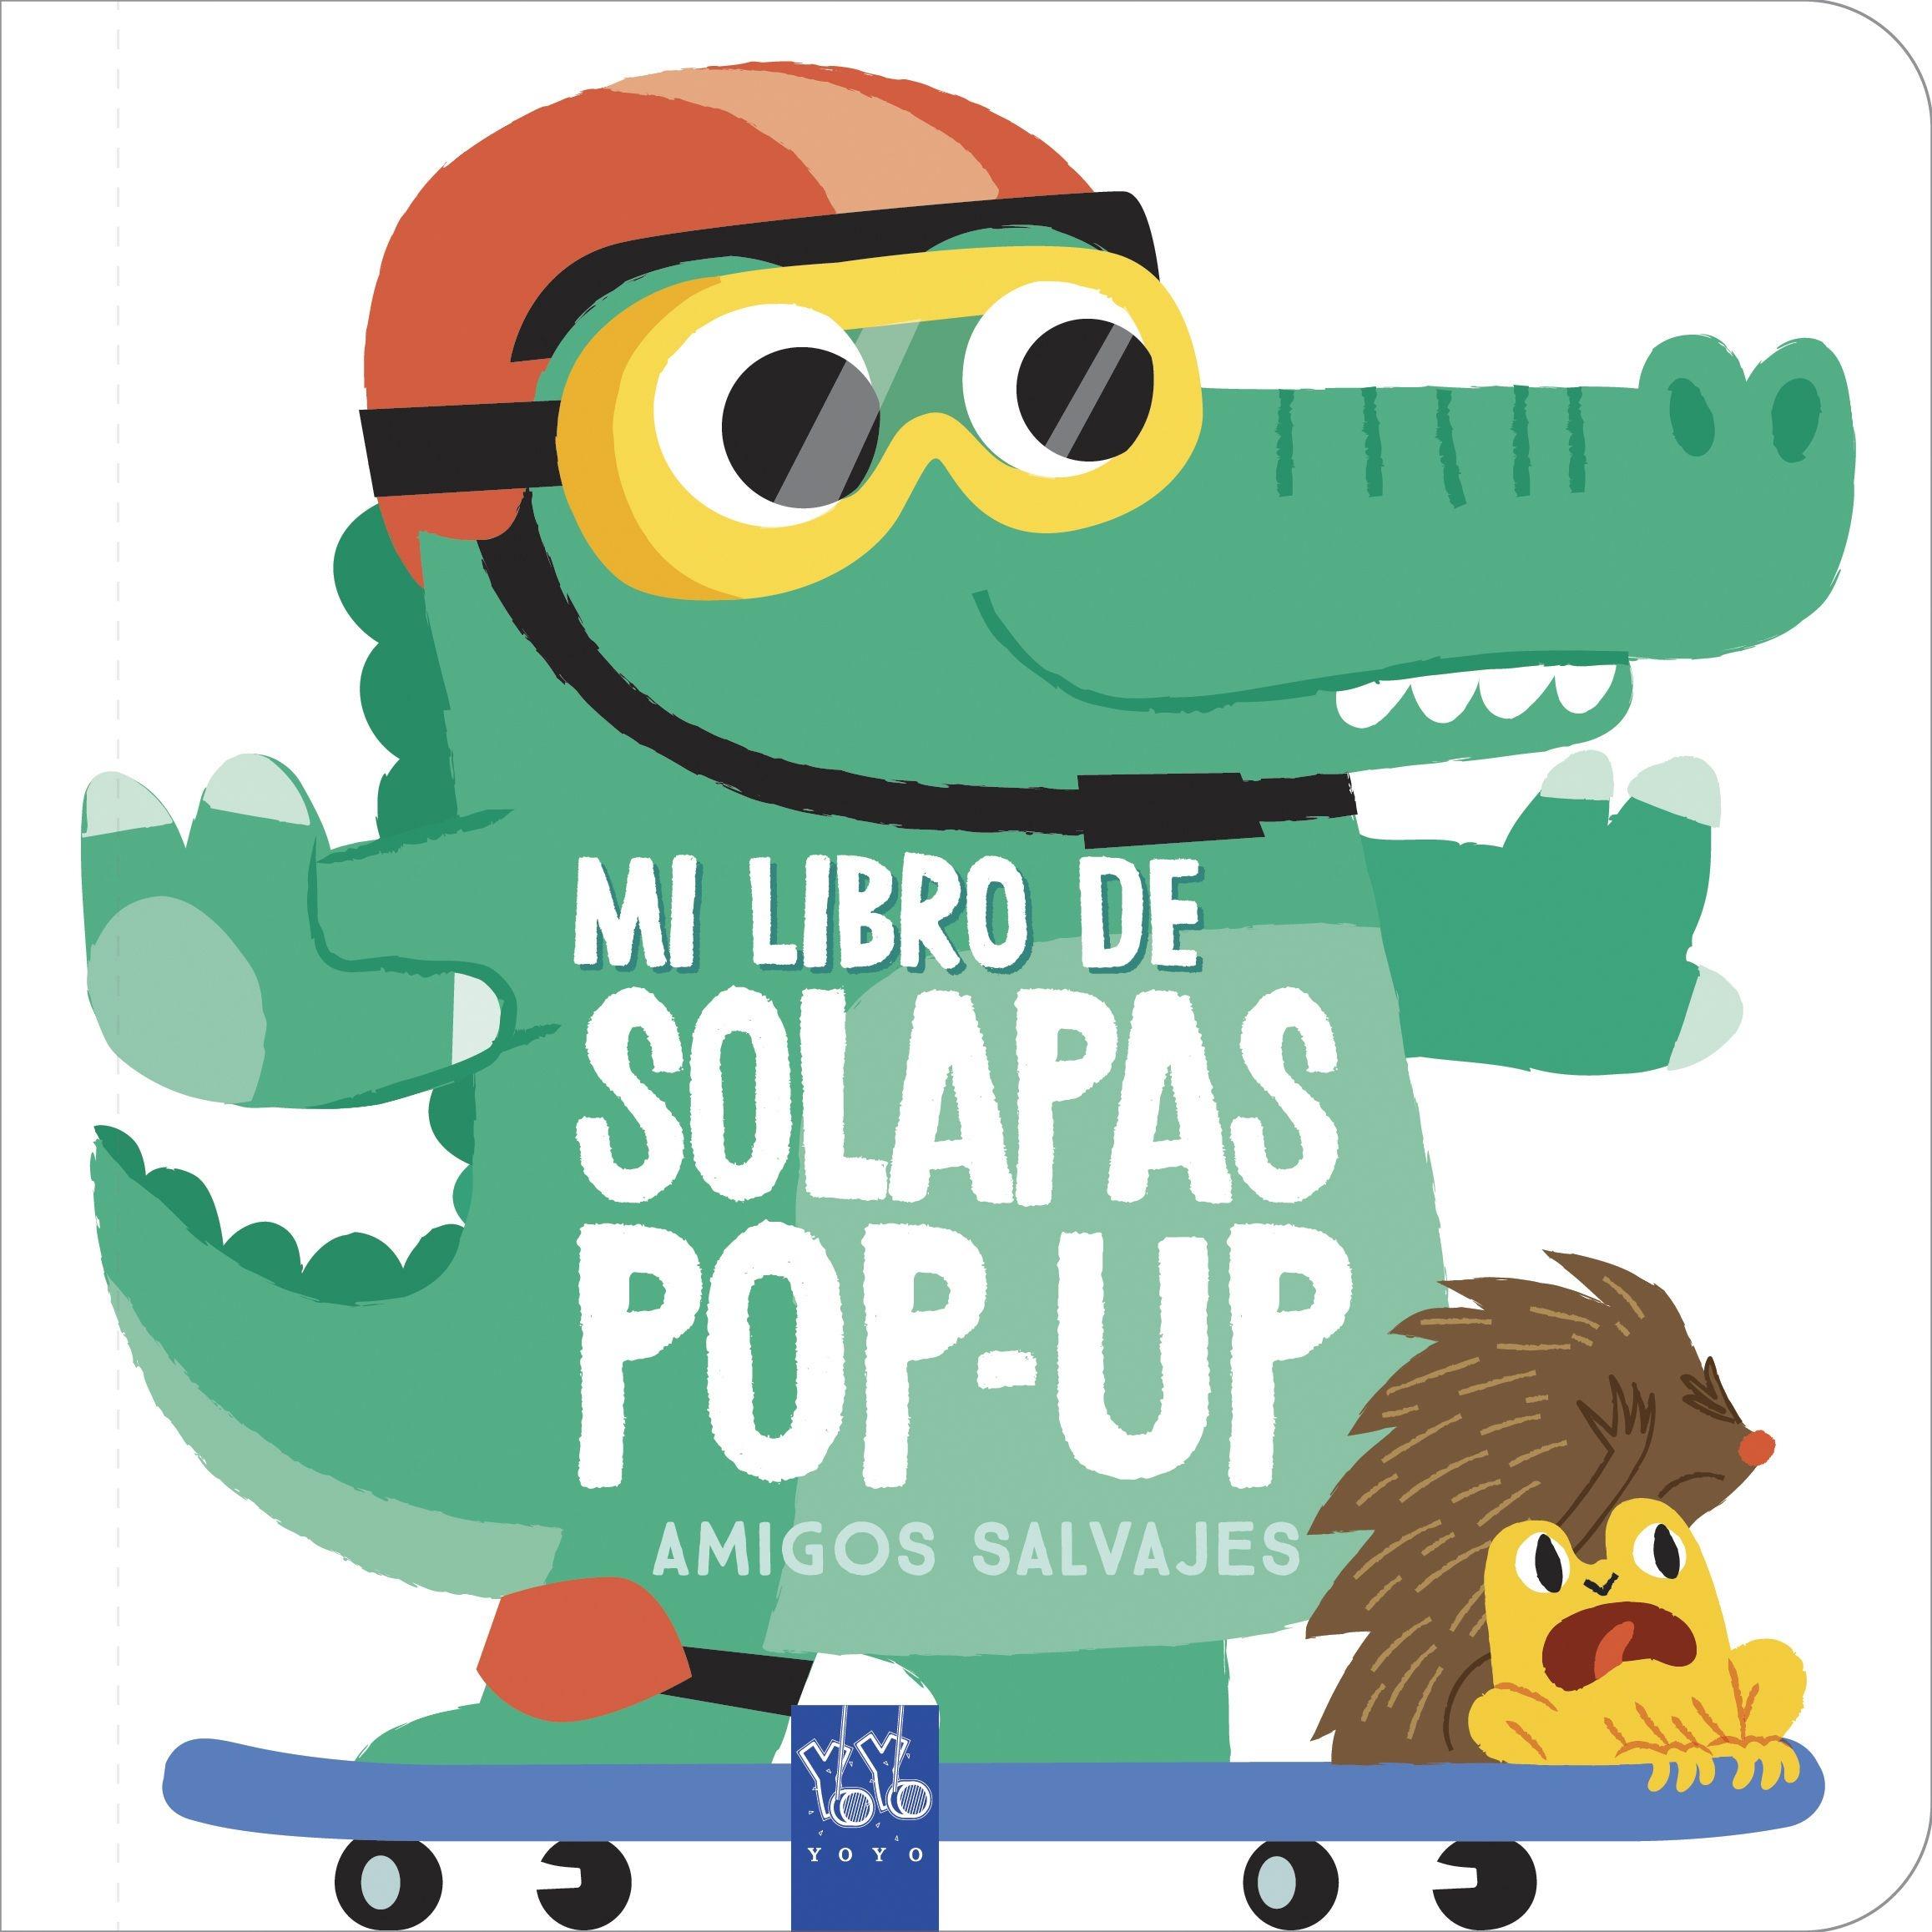 Amigos salvajes "Mi libro de solapas pop-up"